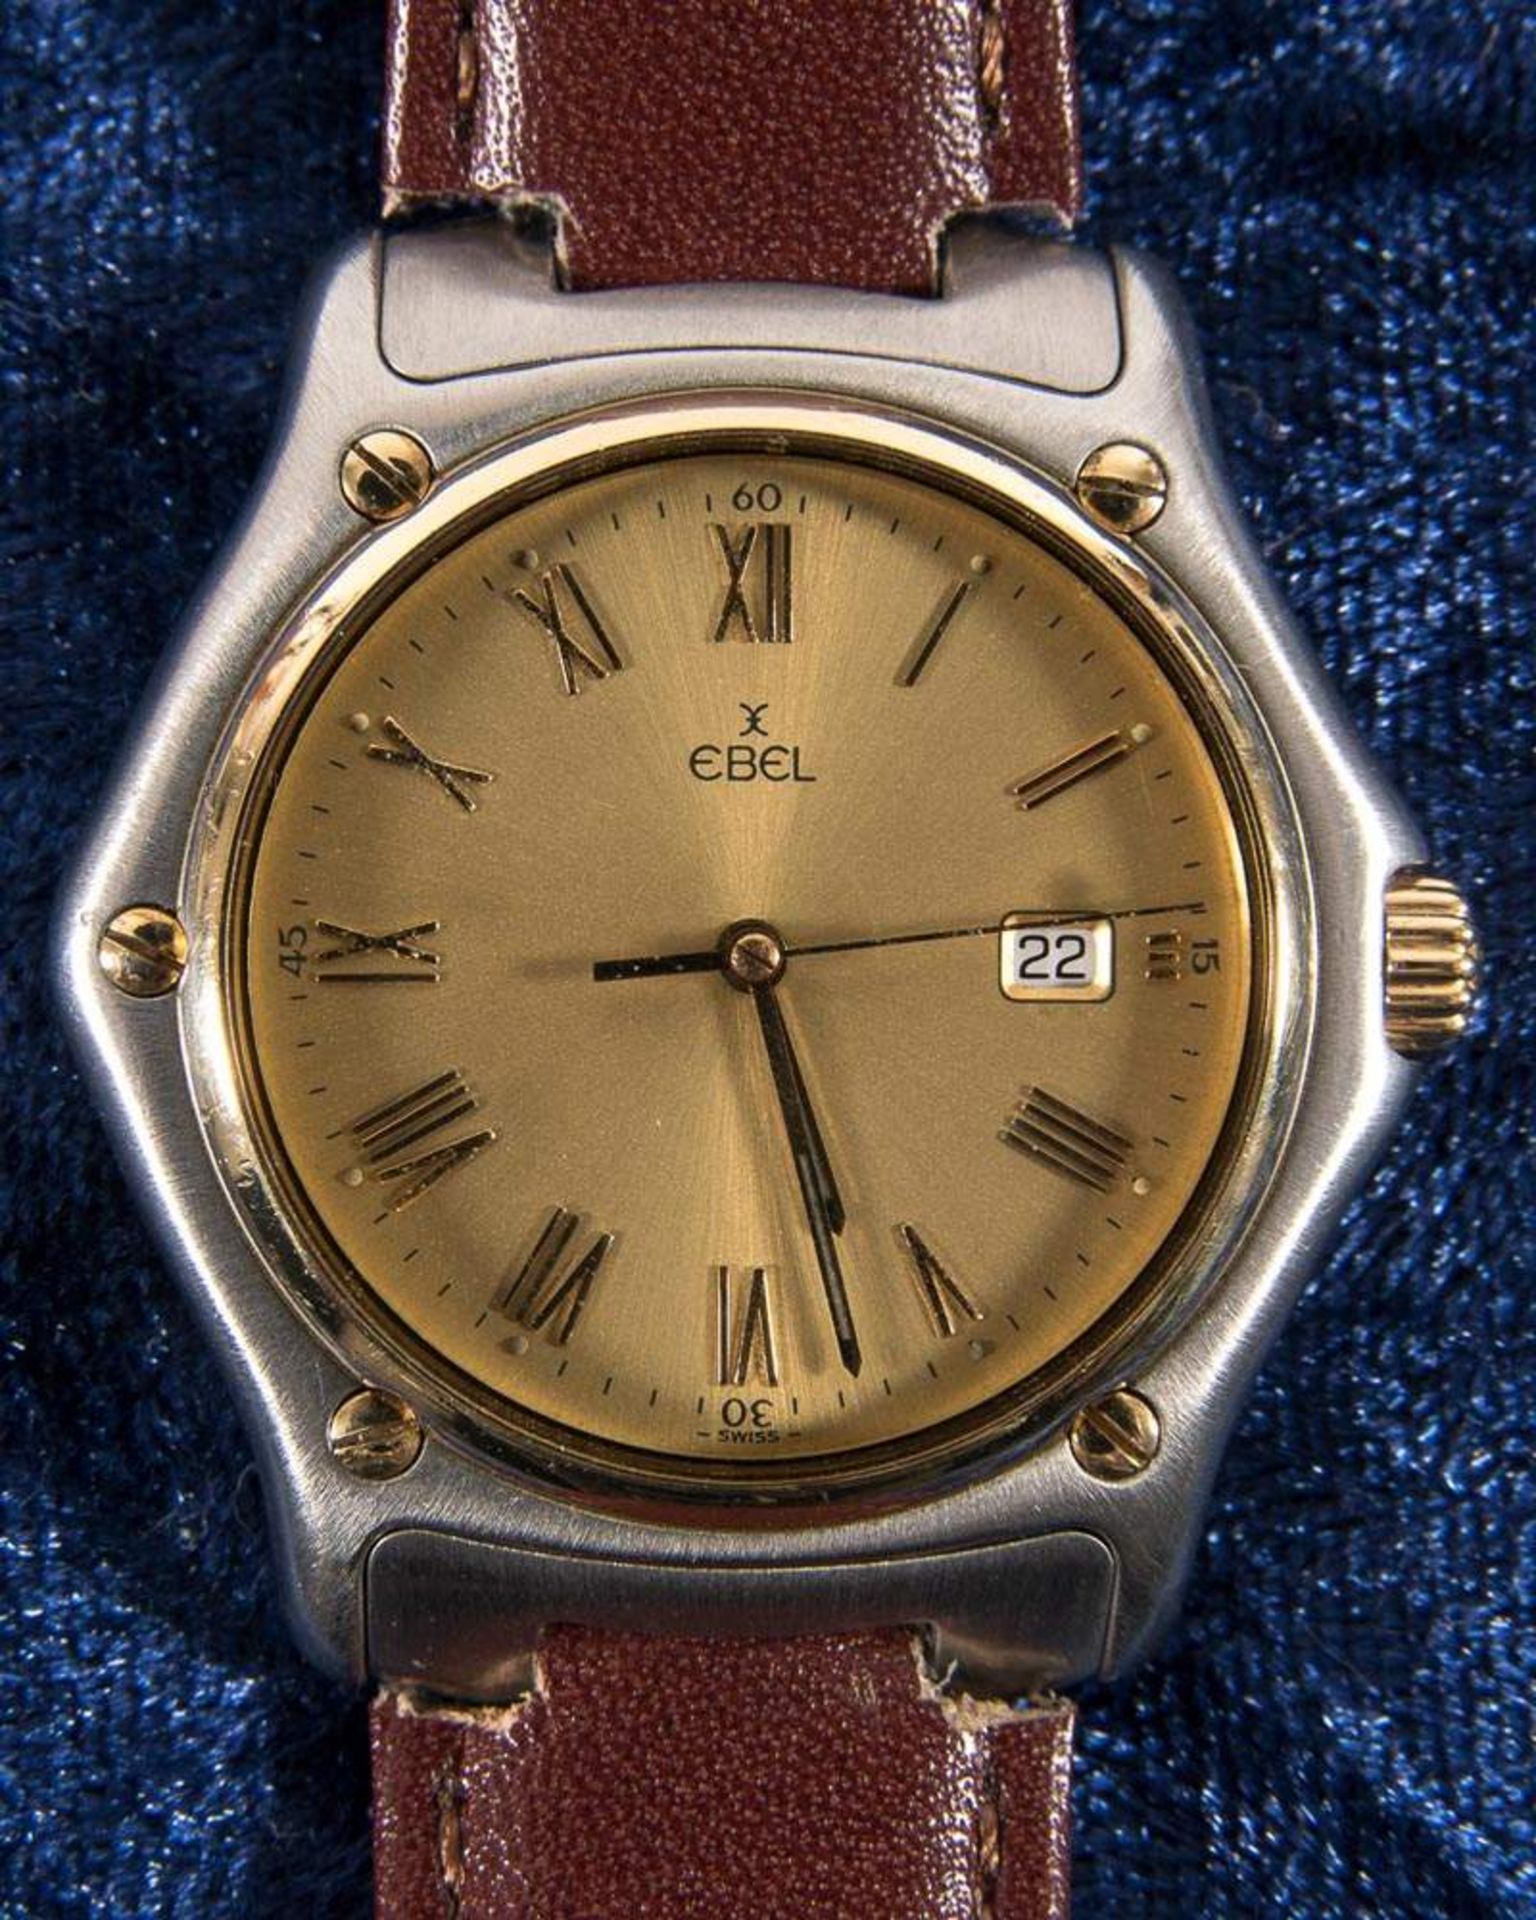 "EBEL" - Damenarmbanduhr mit Datumsanzeige. Gehäuse in Stahl/Gold. Funktionstüchtiges Quartzwerk.